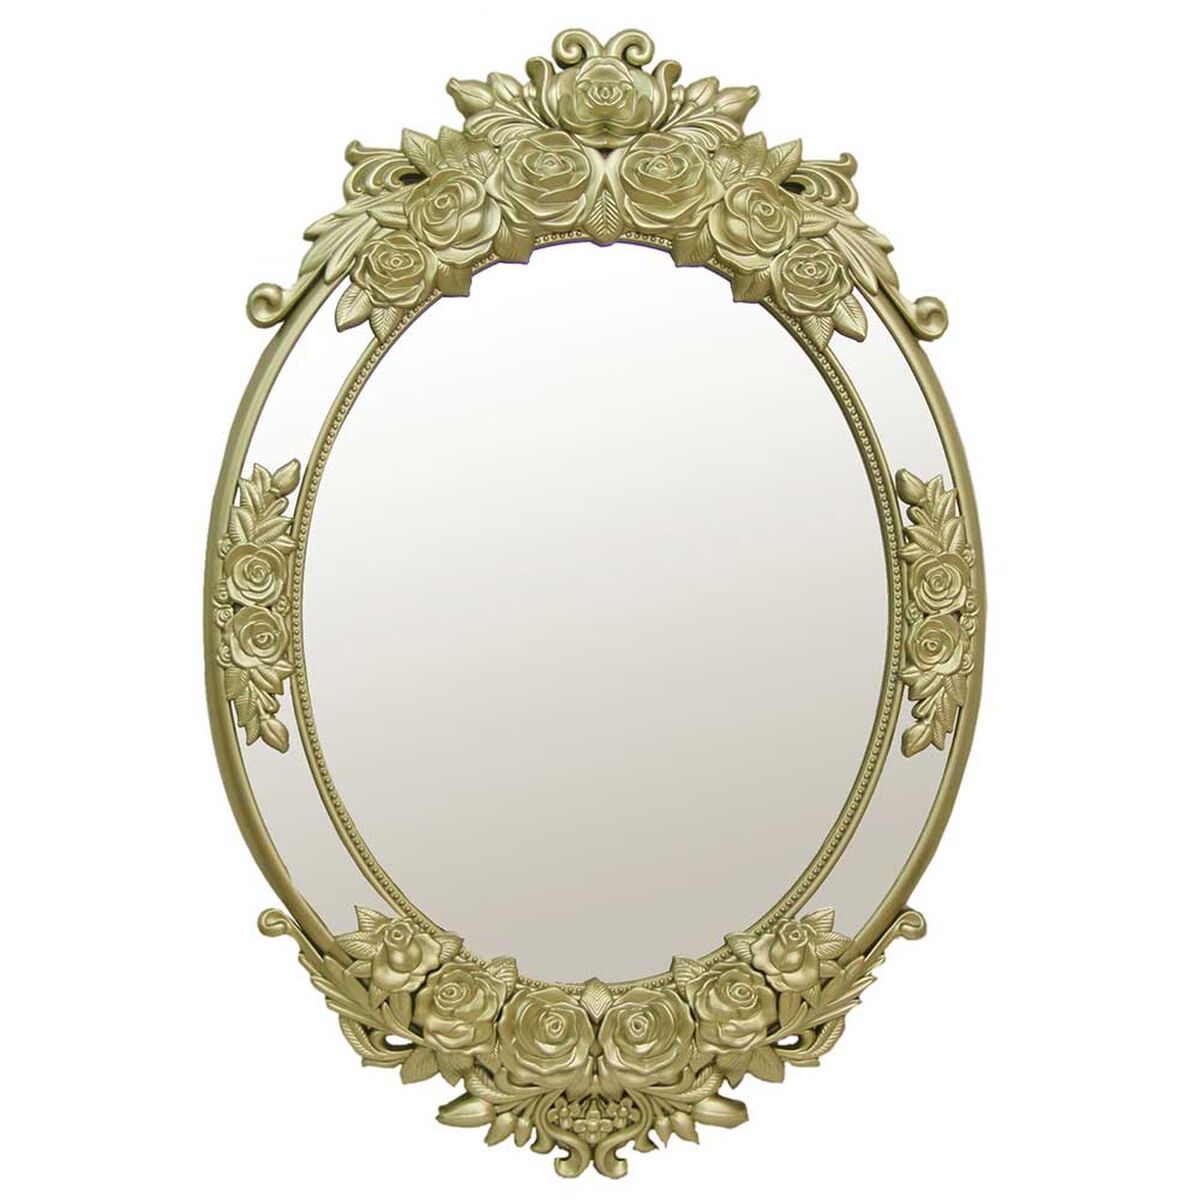 Compra un espejo ovalado en tendencia aquí! 